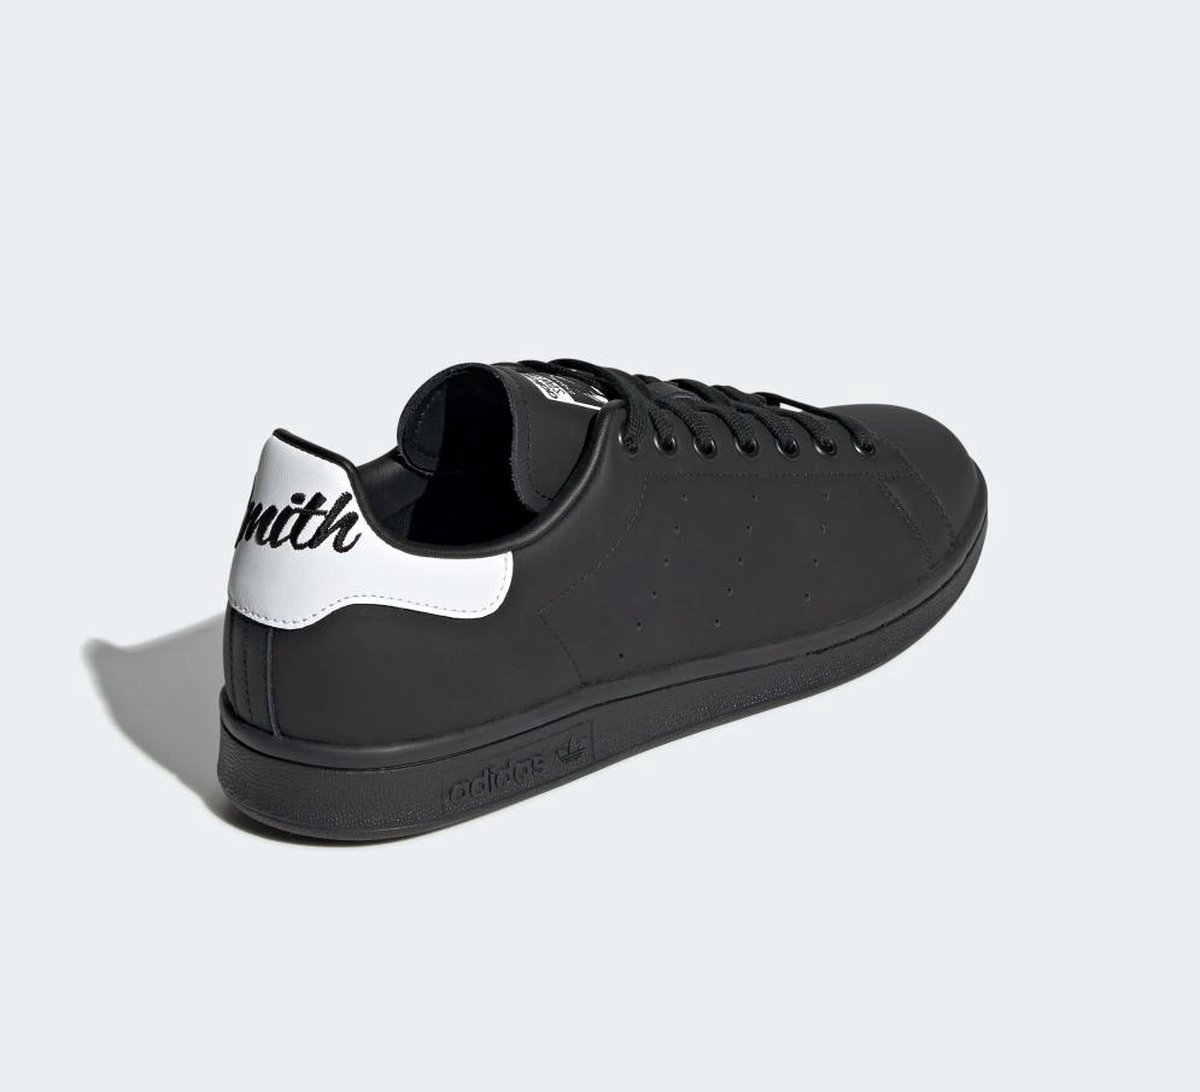 Adidas Stan Smith Zwart / Wit - Heren Sneaker - EE5819 - Maat 44 | bol.com